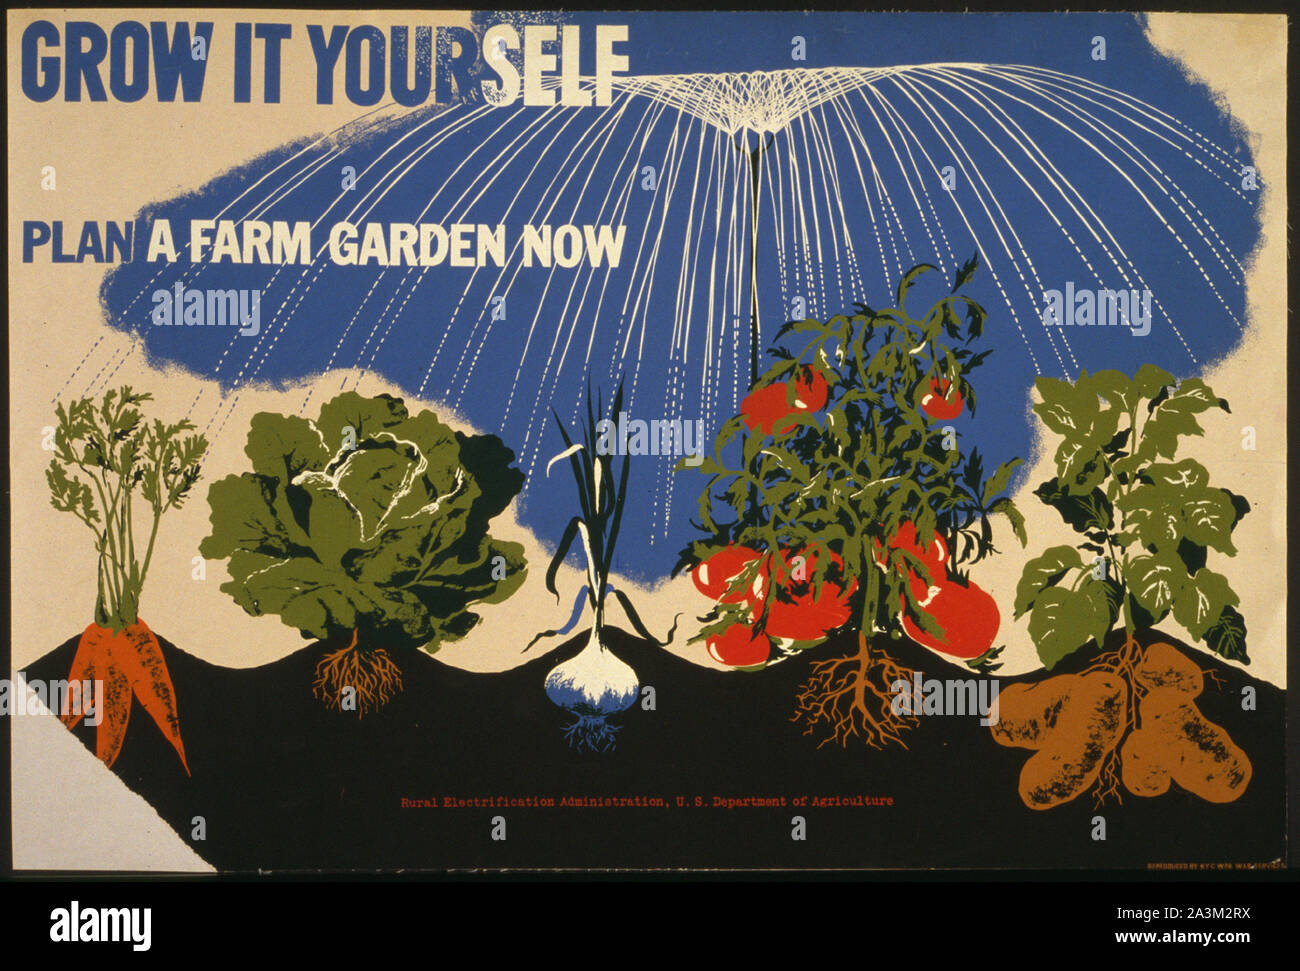 Planter un jardin ferme maintenant - l'avancement des travaux de l'Administration - Projet d'art fédéral - Vintage poster Banque D'Images